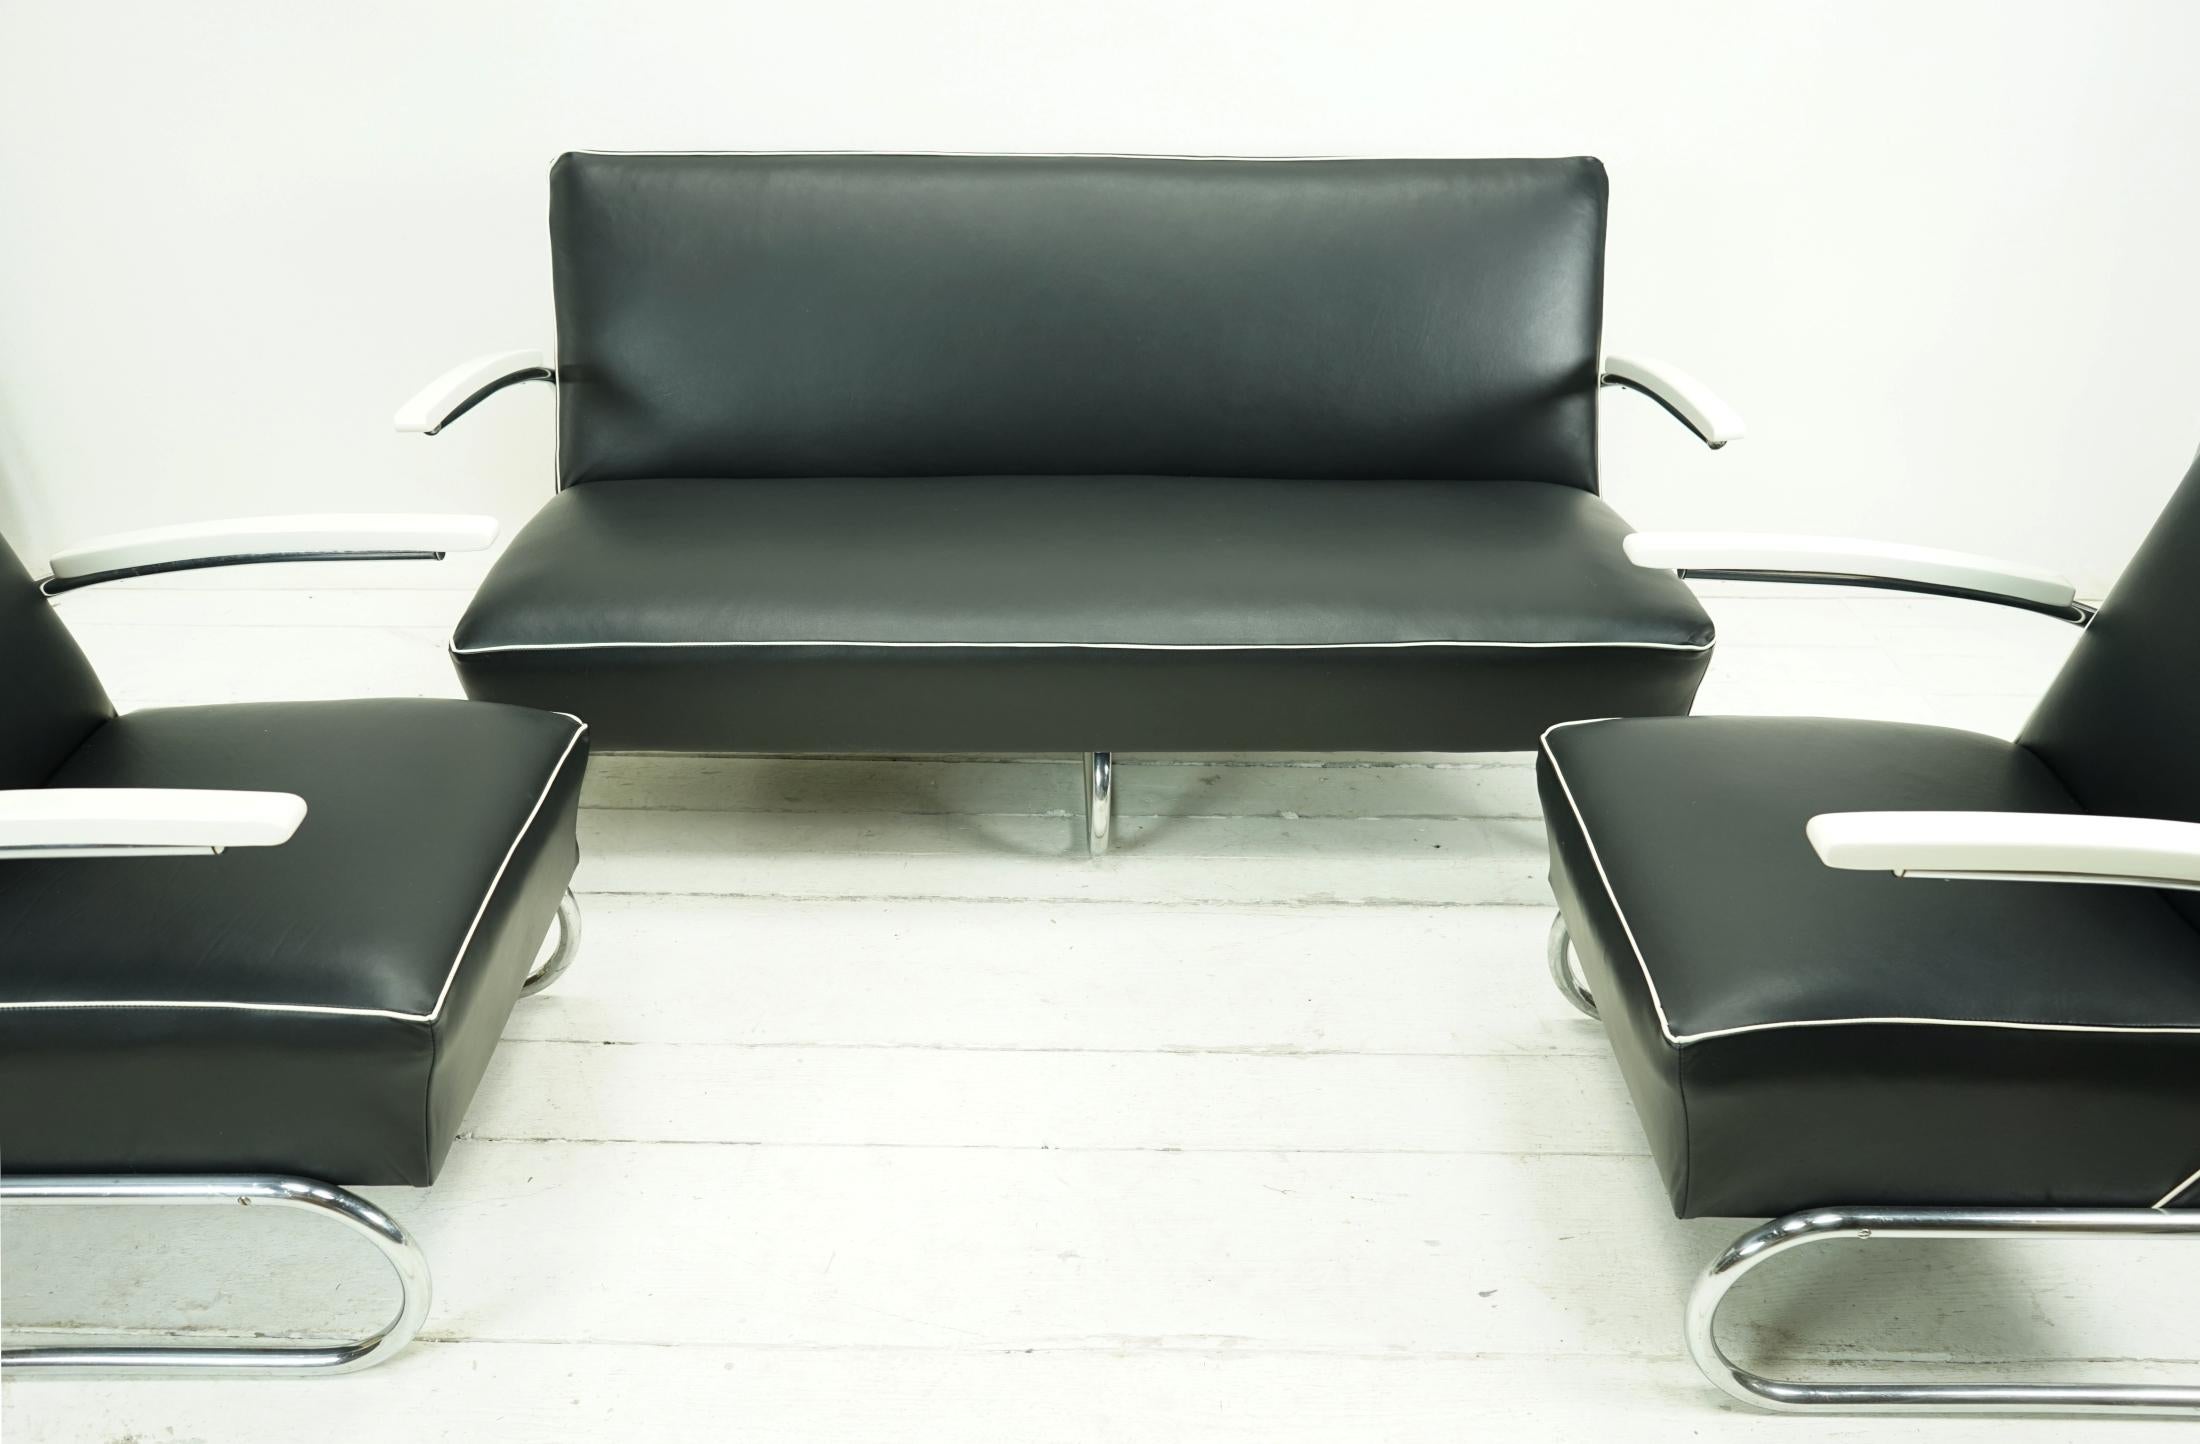 Objekt: Freischwinger-Sofa + 2 Freischwinger-Sessel

Zeit: um 1935

Stil: Bauhaus
 
Entwurf: Thonet

Leder: Nappa schwarz mit Keder perlweiß


Seltenes Stahlrohrsofa + 2 Sessel,
aus den 1930er Jahren.
Die Hauptbestandteile dieses